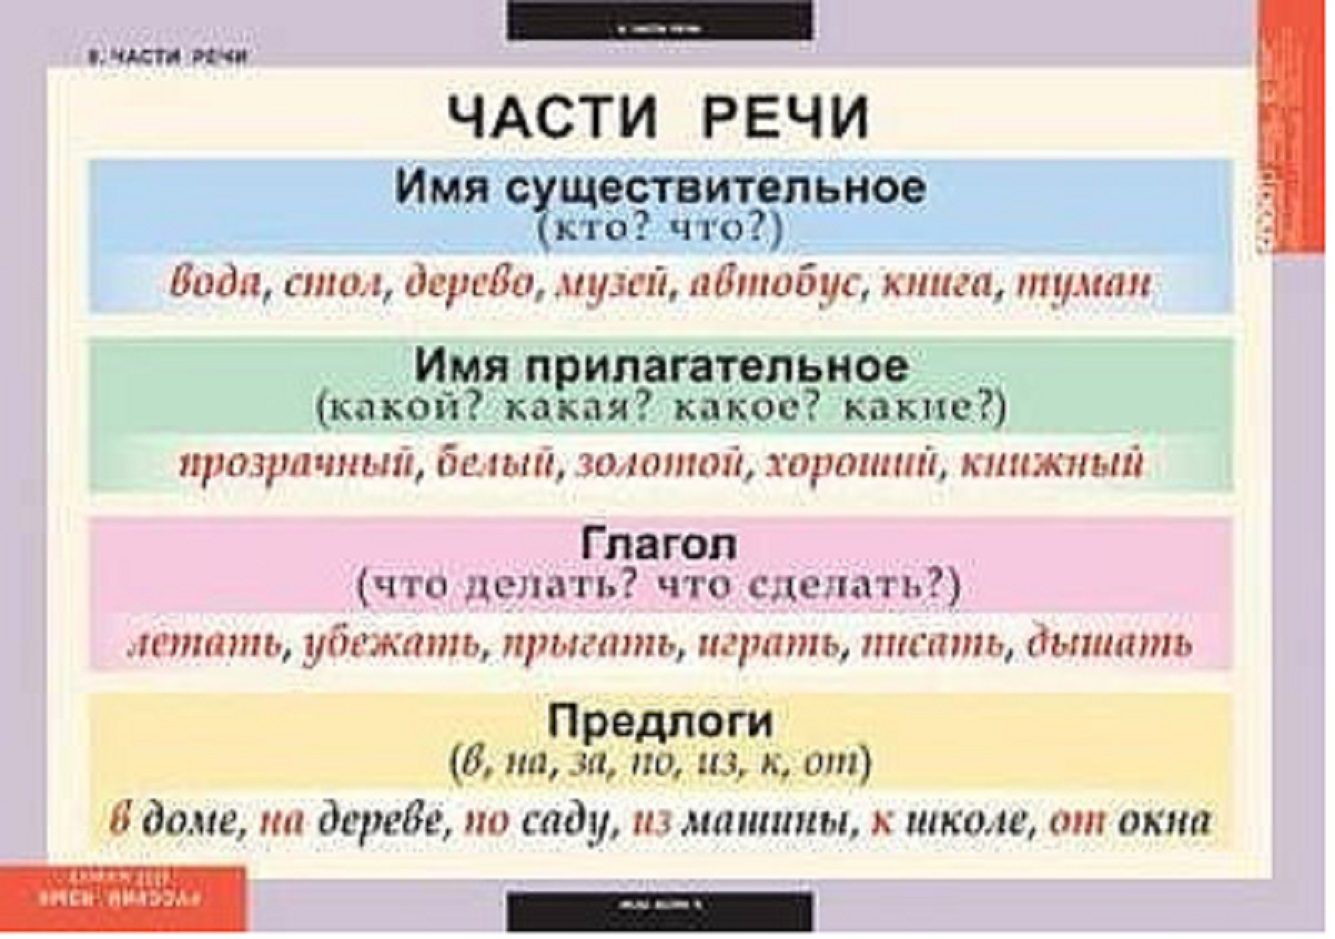 Удовлетворено часть речи. Части речи. Части речи 2 класс таблица. Части речи в русском языке. Части речи 2 класс.